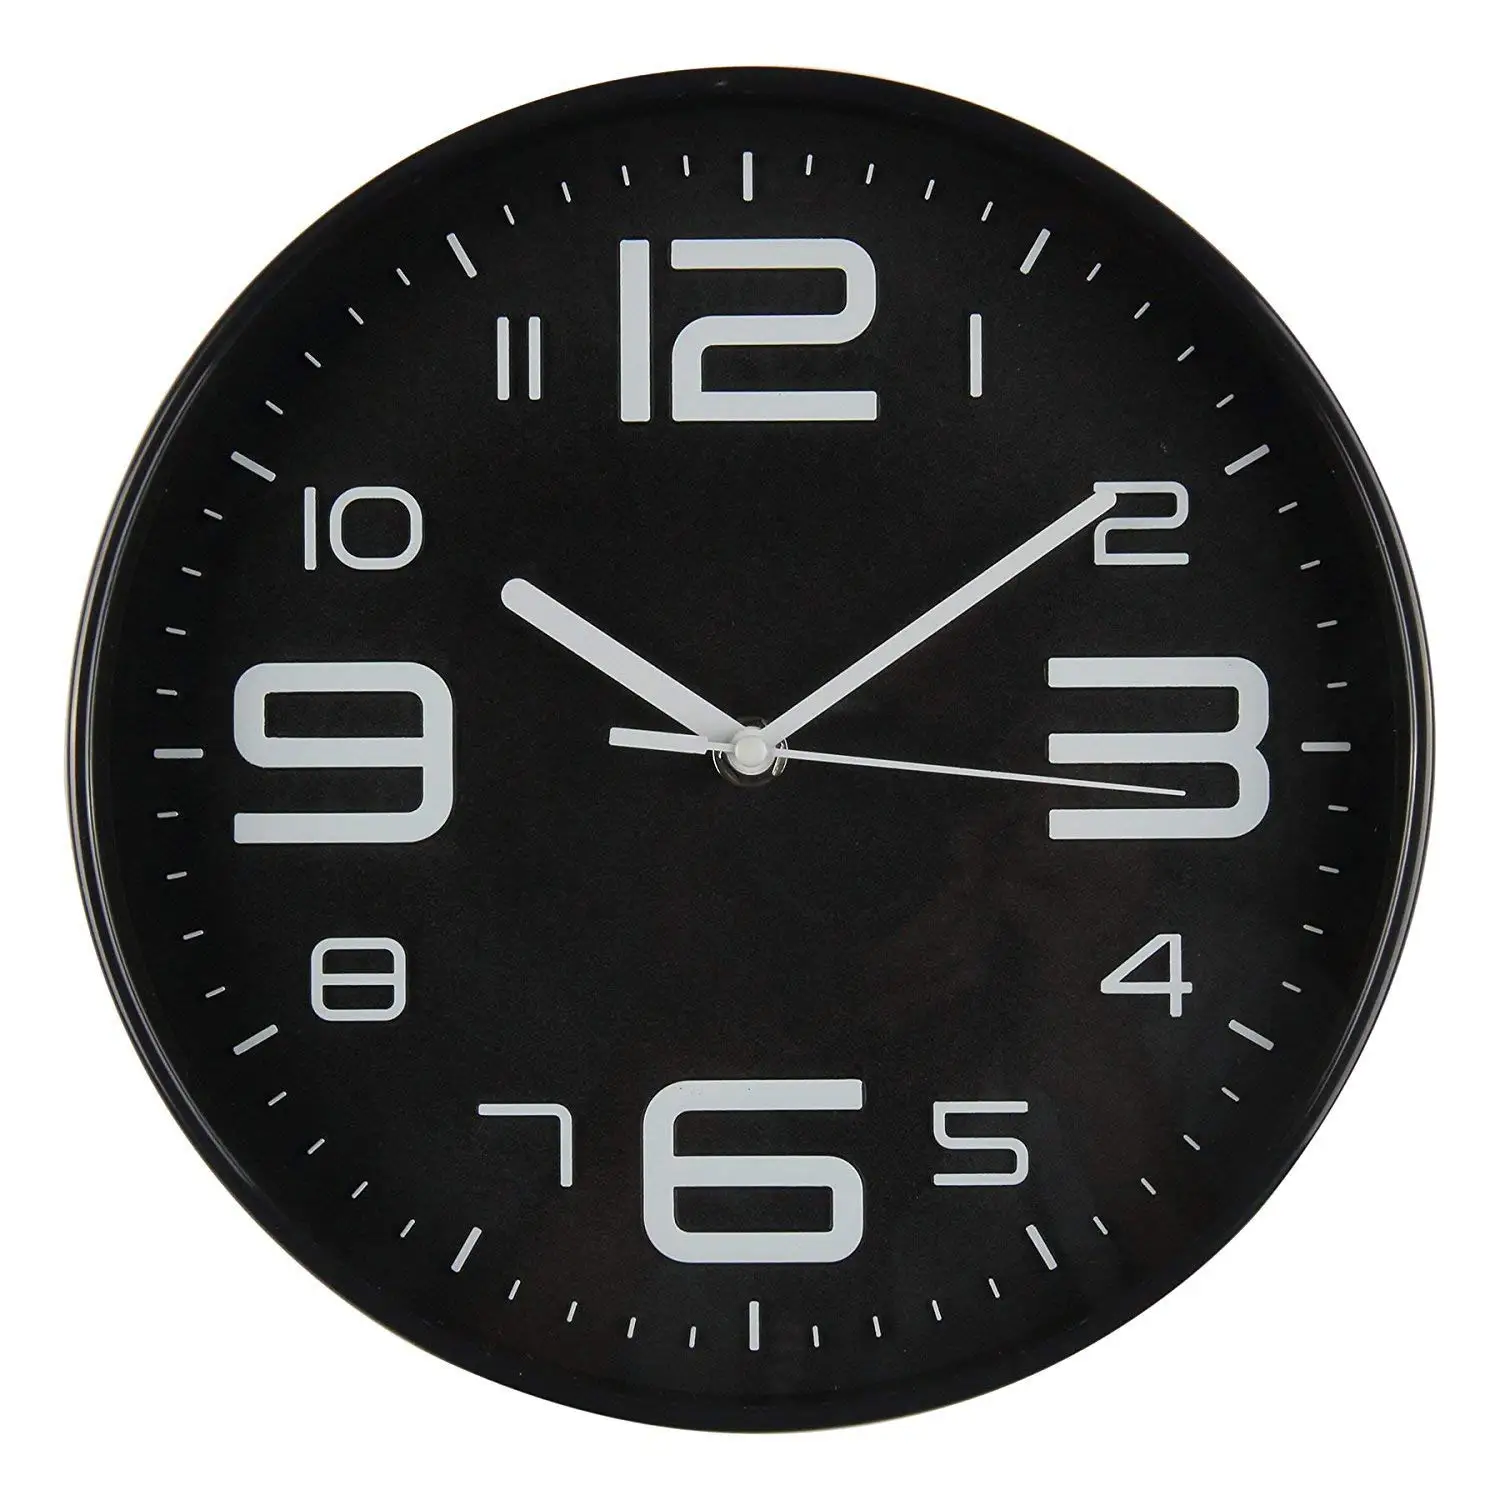 Горячая Распродажа, большие настенные часы с объемным номером, бесшумные настенные часы, настенные часы на батарейках, 10 дюймов